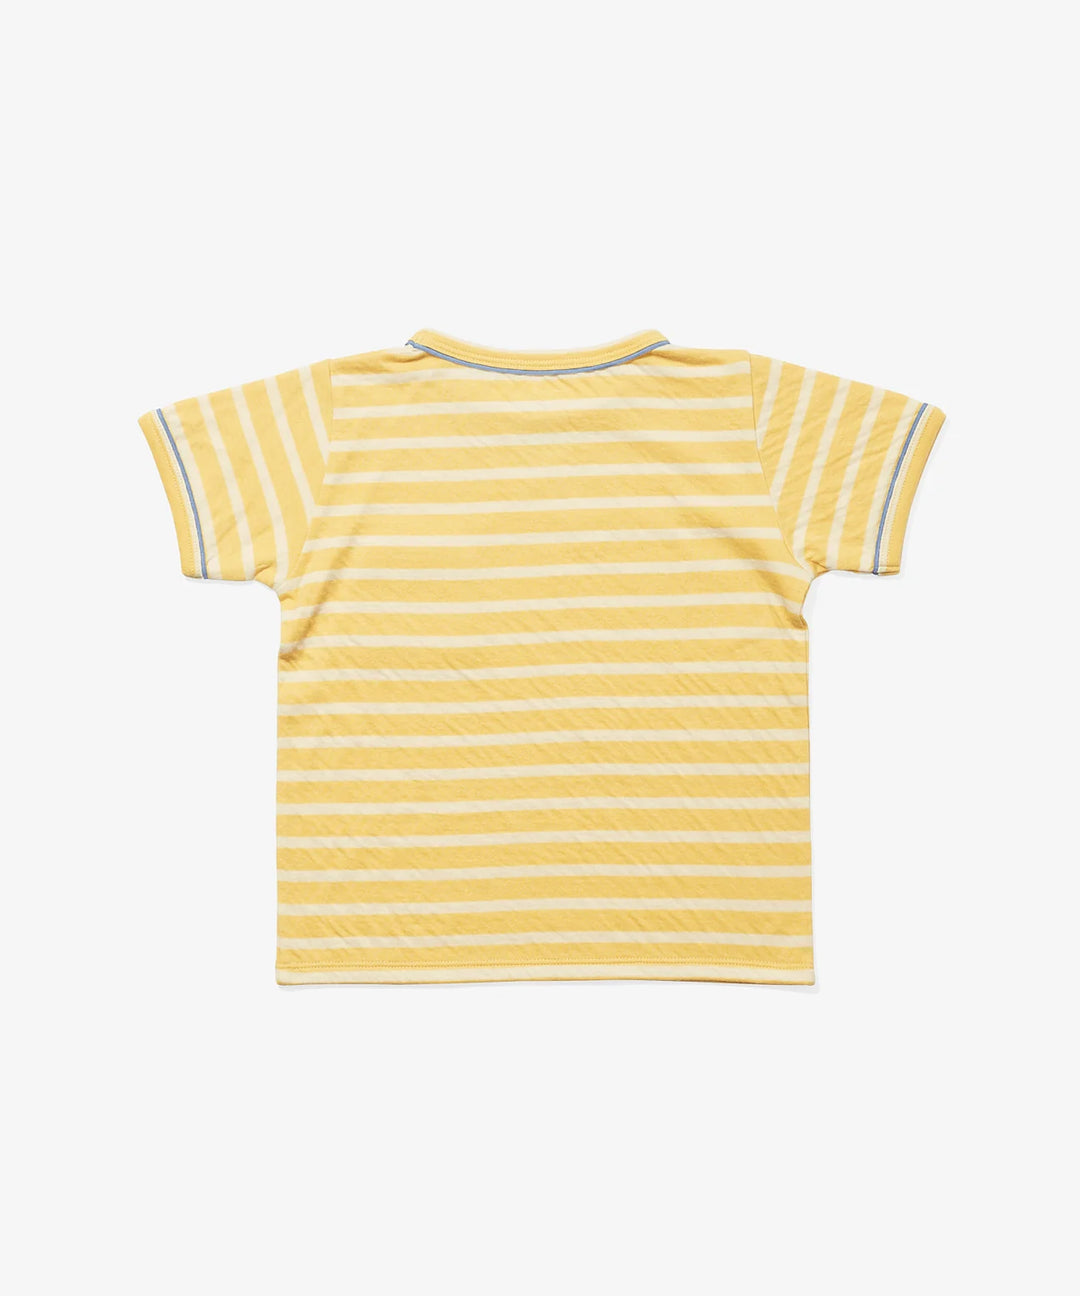 Willie T-Shirt, Yellow Stripe